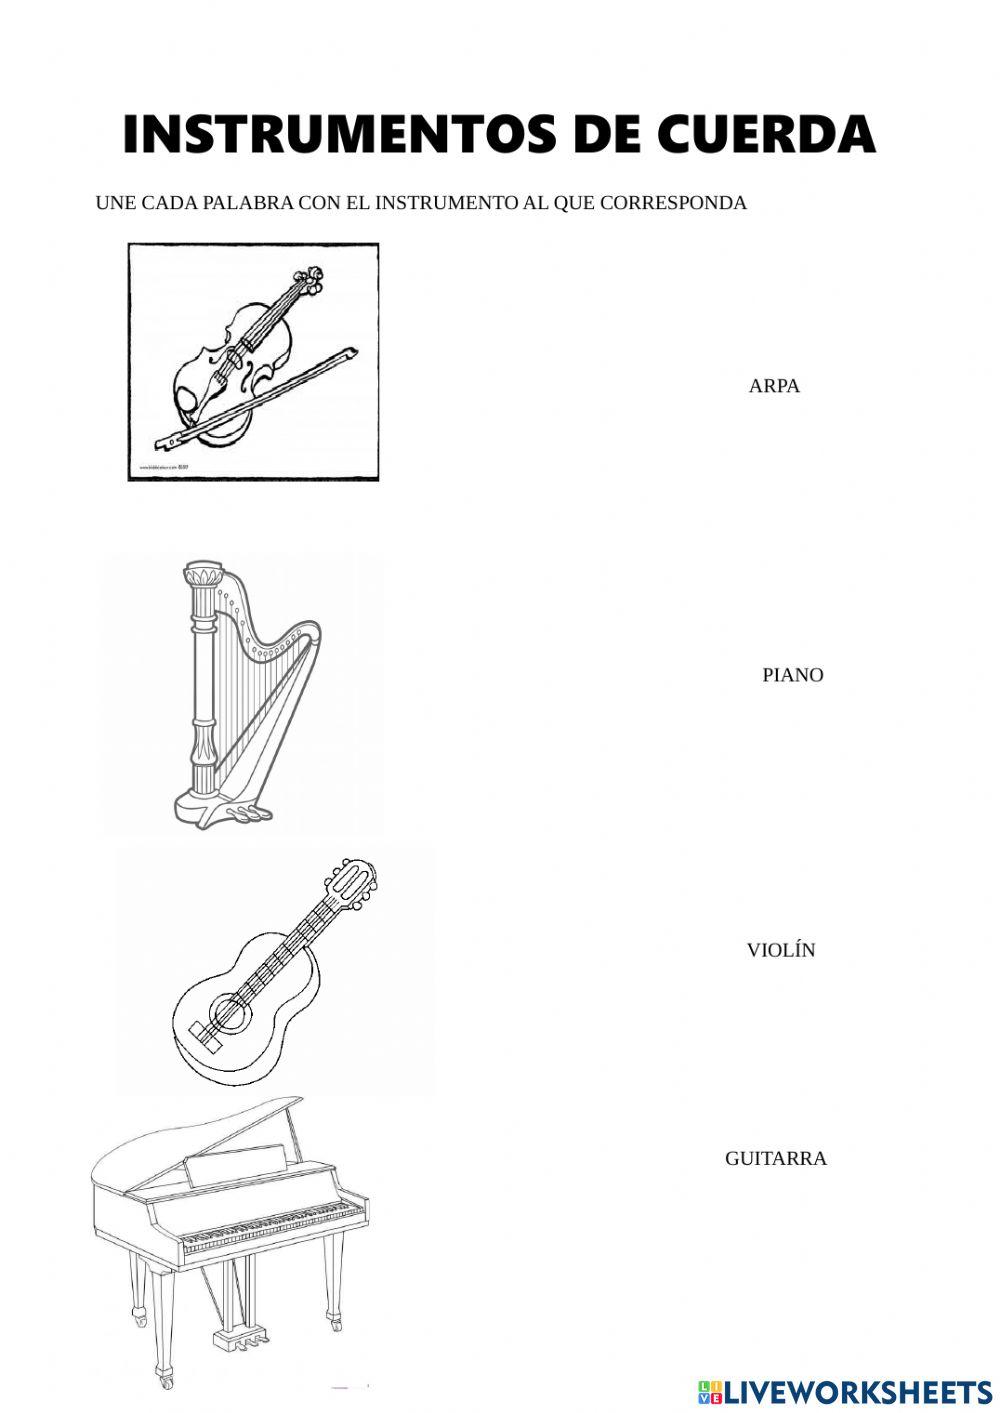 Instrumentos cuerda